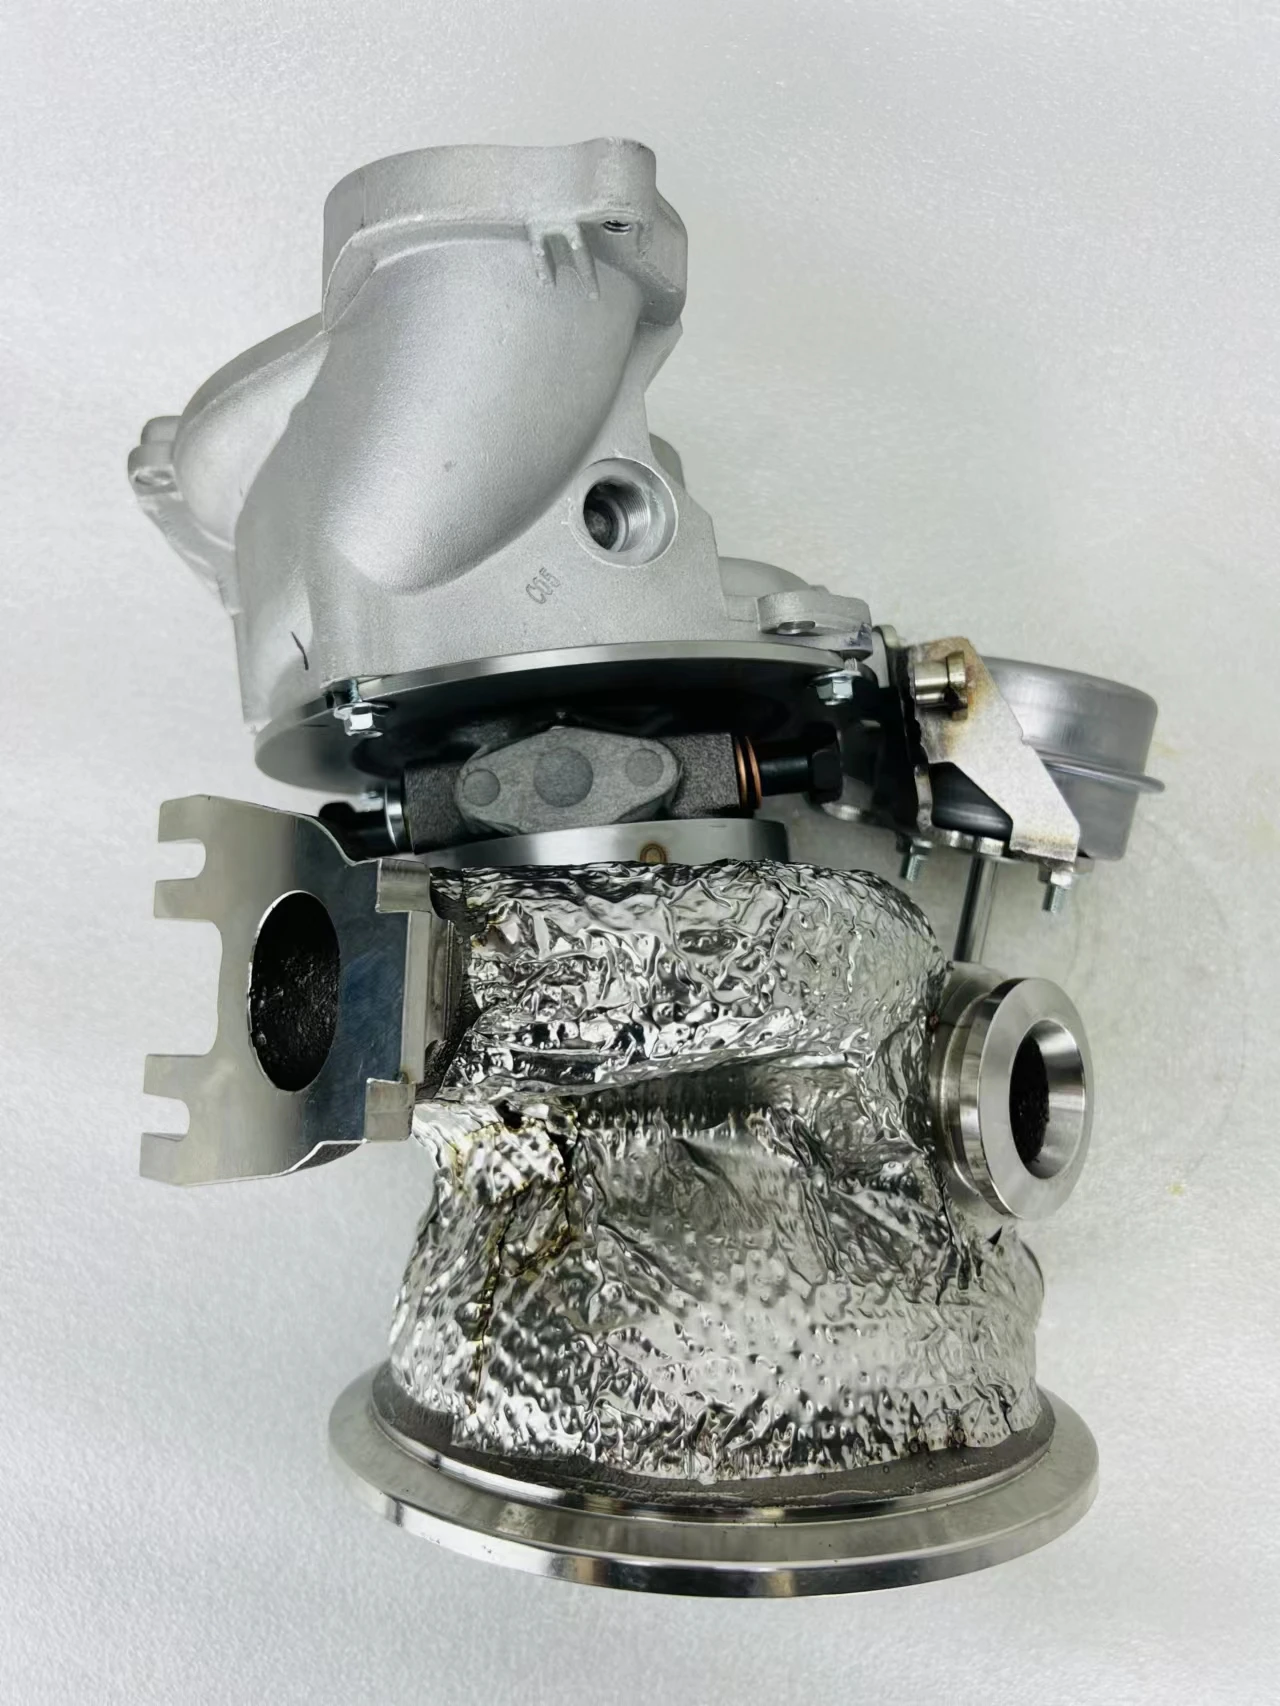 3.0 EA839 için motor değiştirildi. G35-900 tek turboşarj için beygir gücü 800P artırıldı.